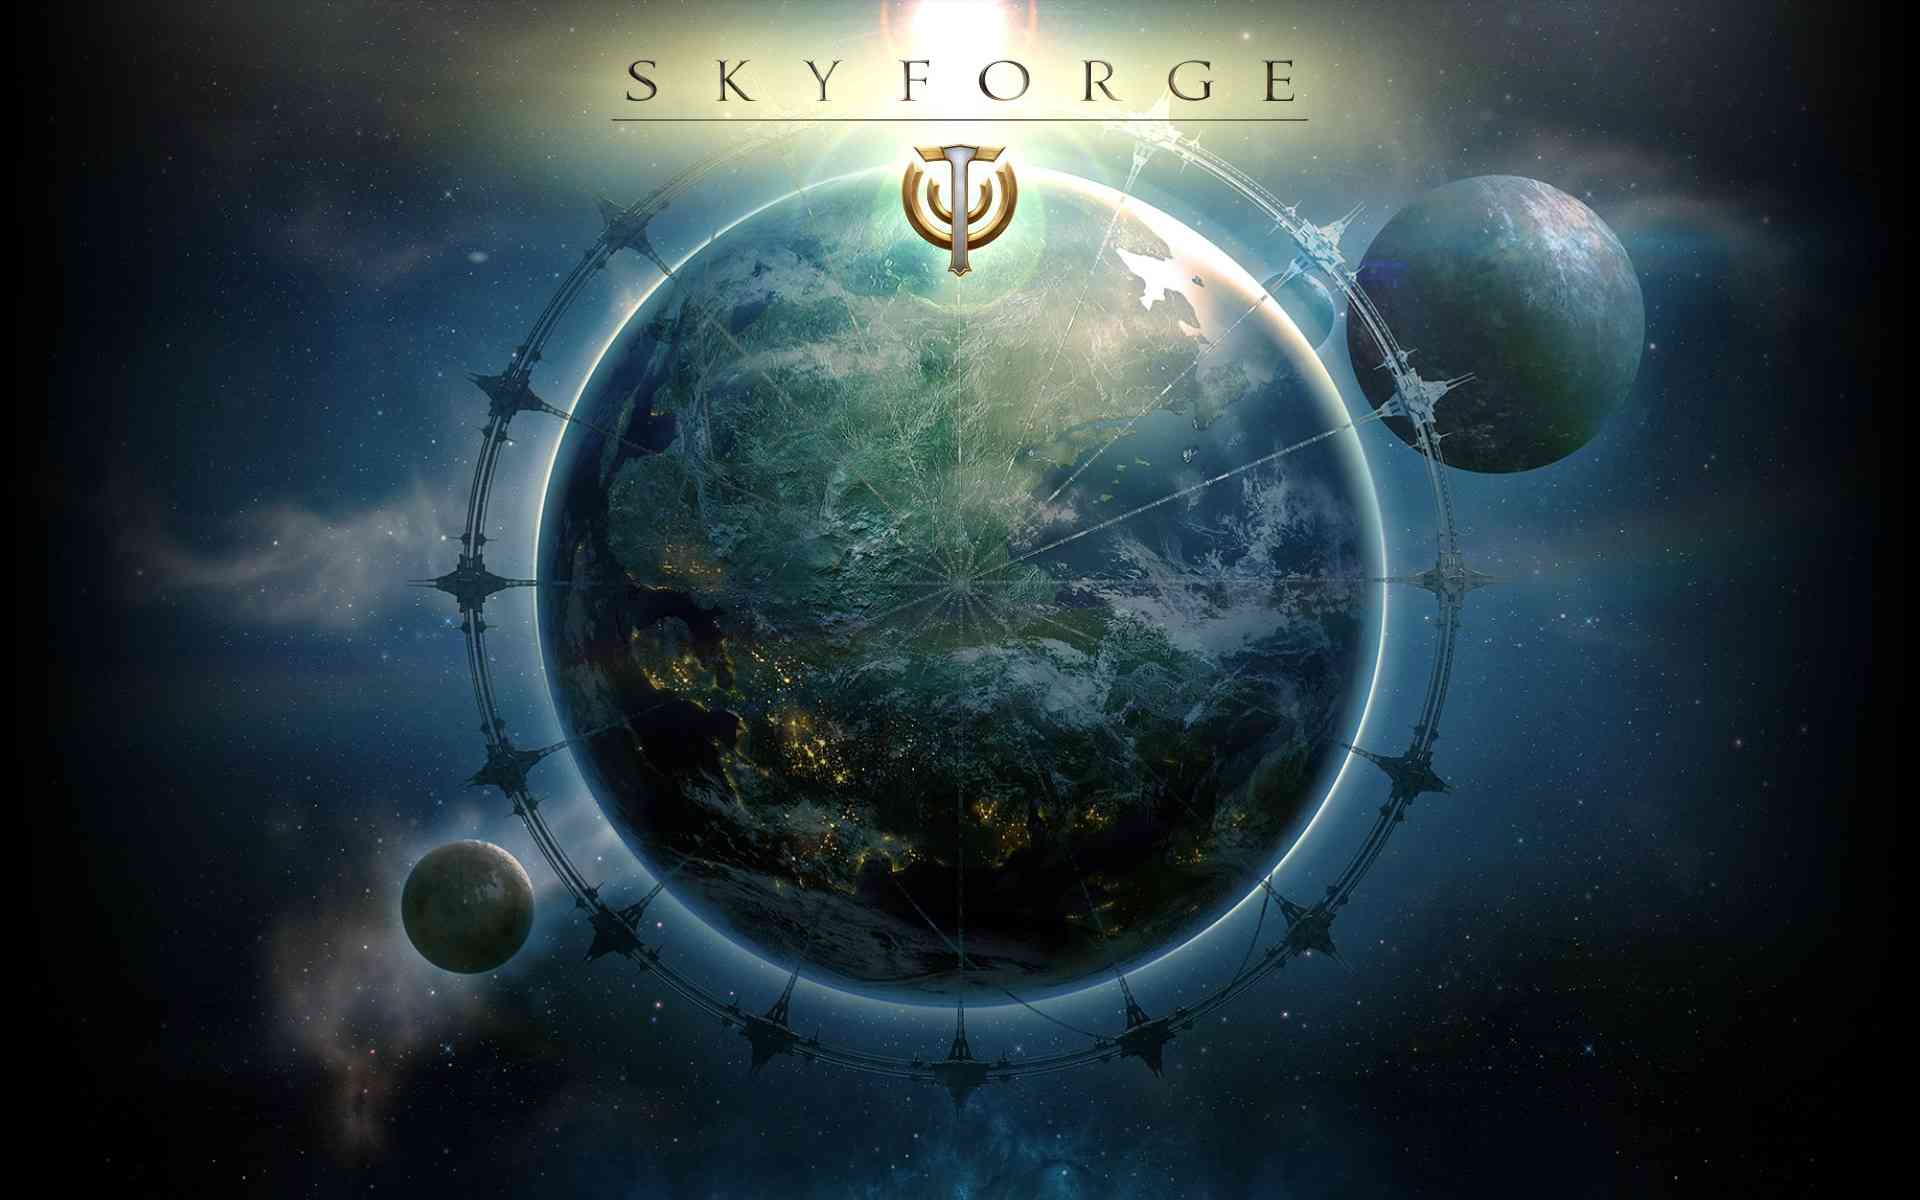 download skyforge website for free